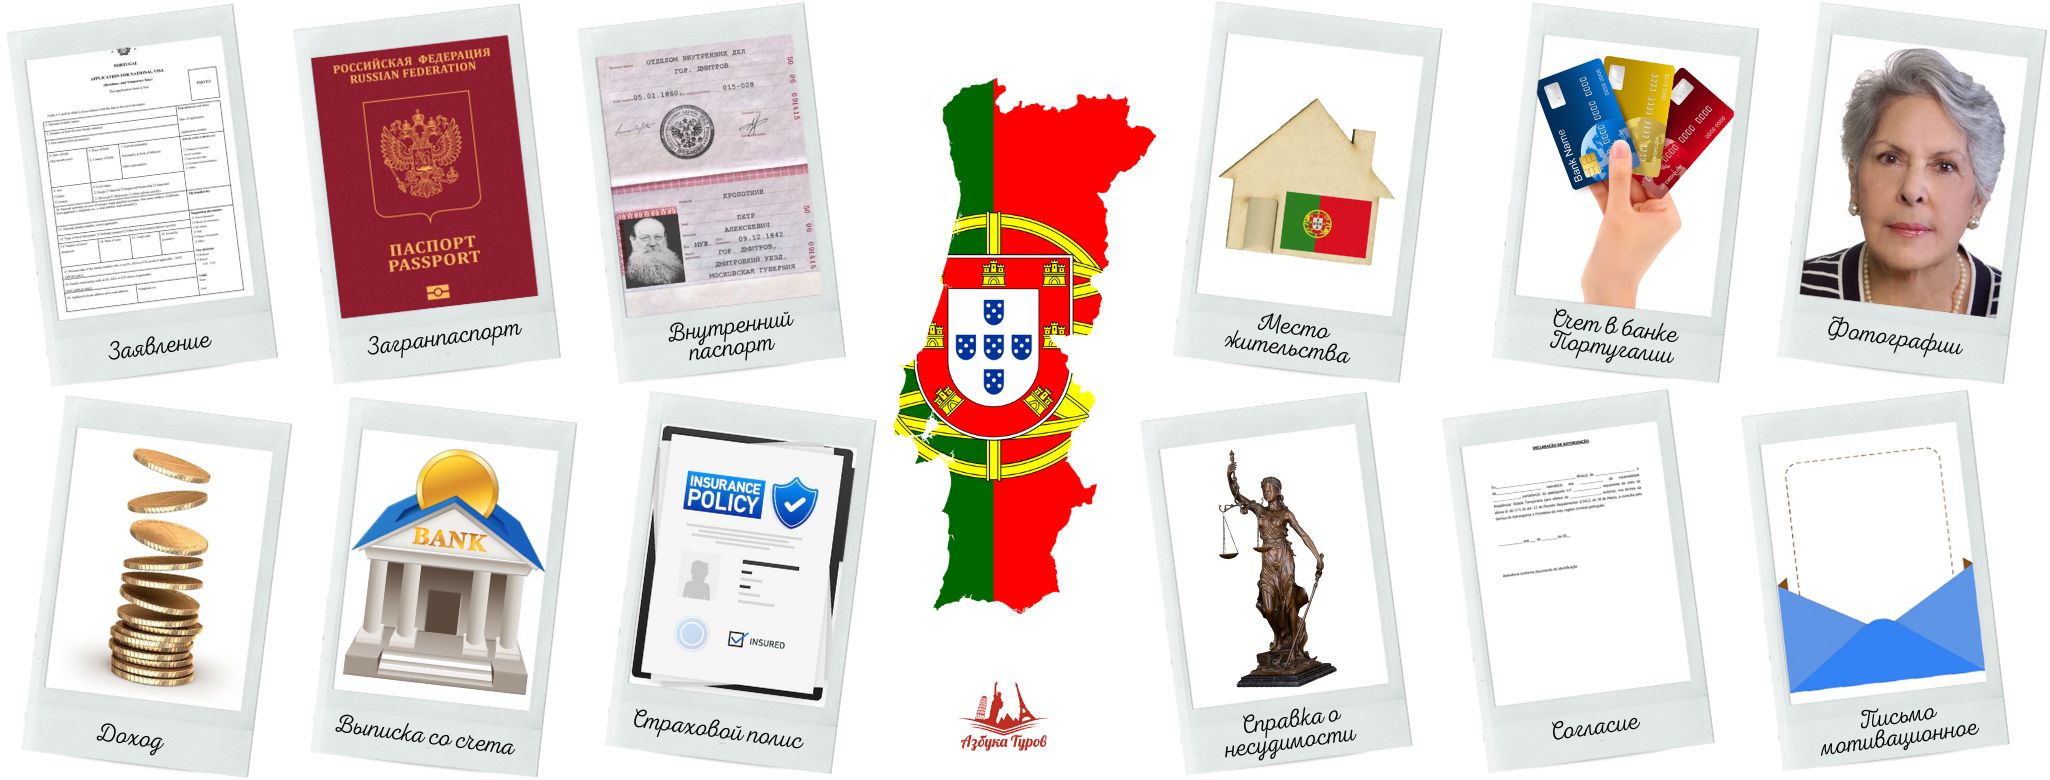 Португальская виза D7